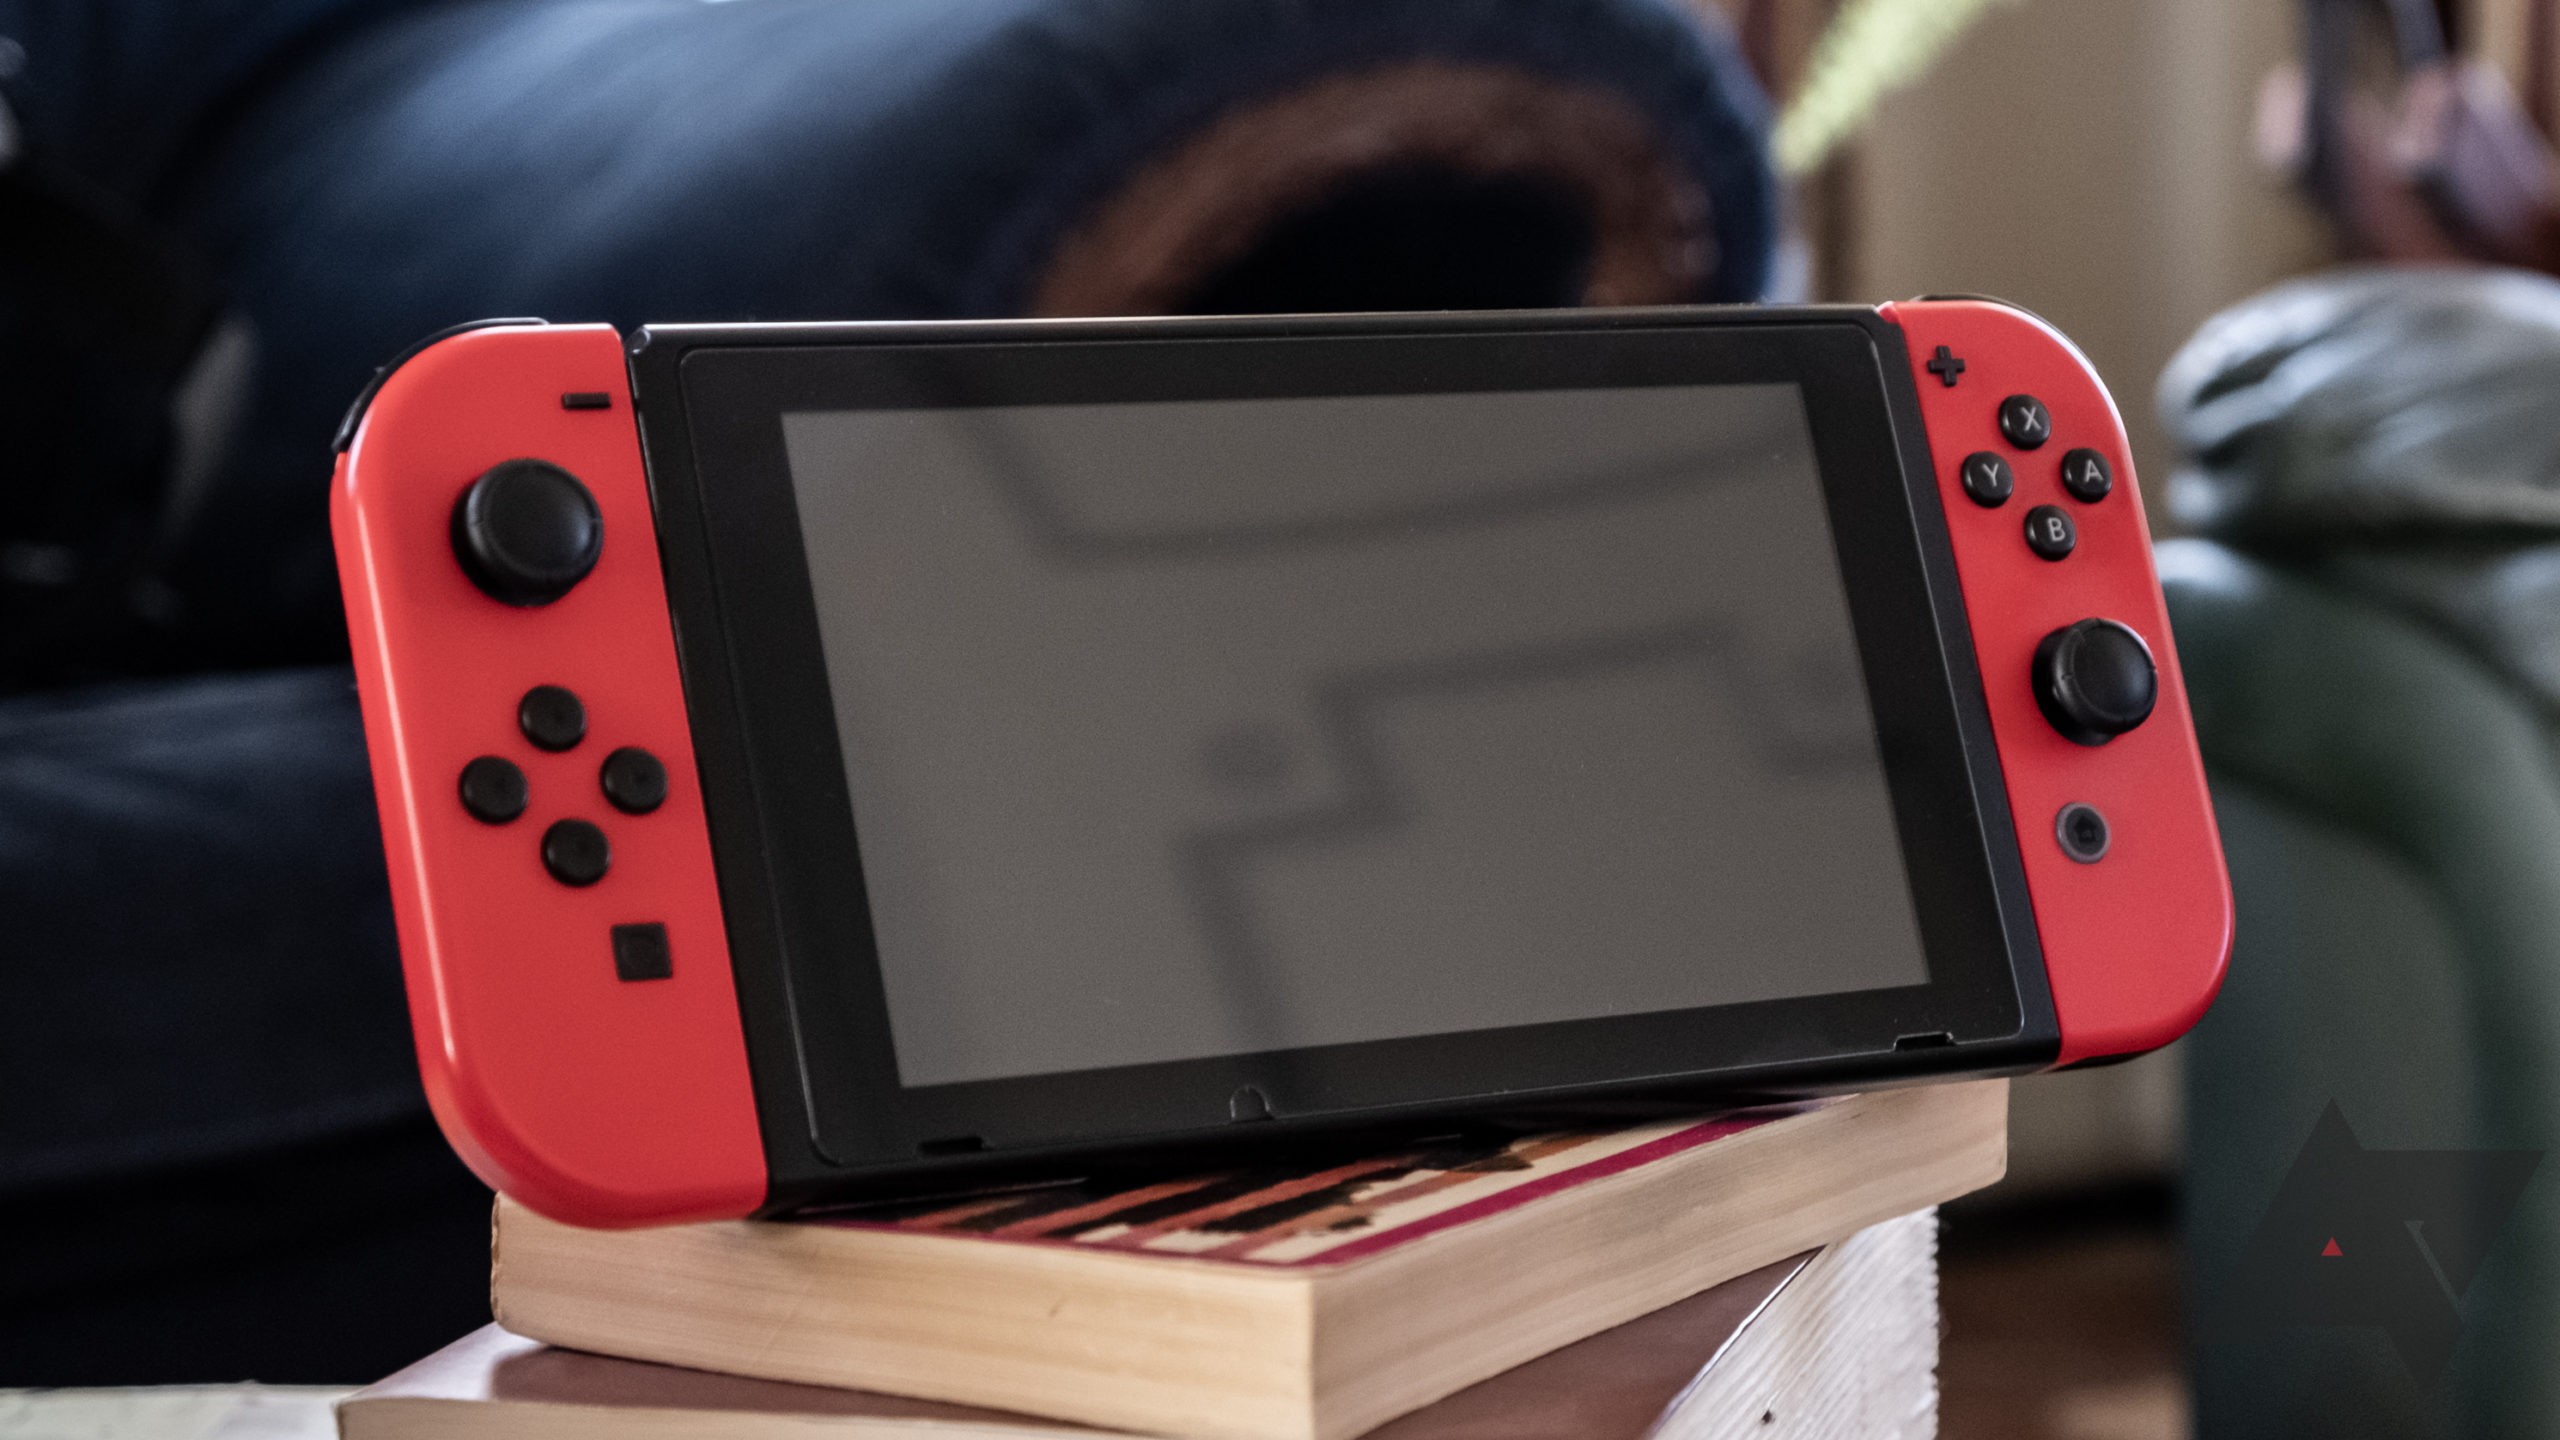 Qualcomm sắp ra mắt máy chơi game nhái Nintendo Switch: Tháo rời được tay cầm, chạy Android 12, giá chỉ 300 USD? - Ảnh 1.